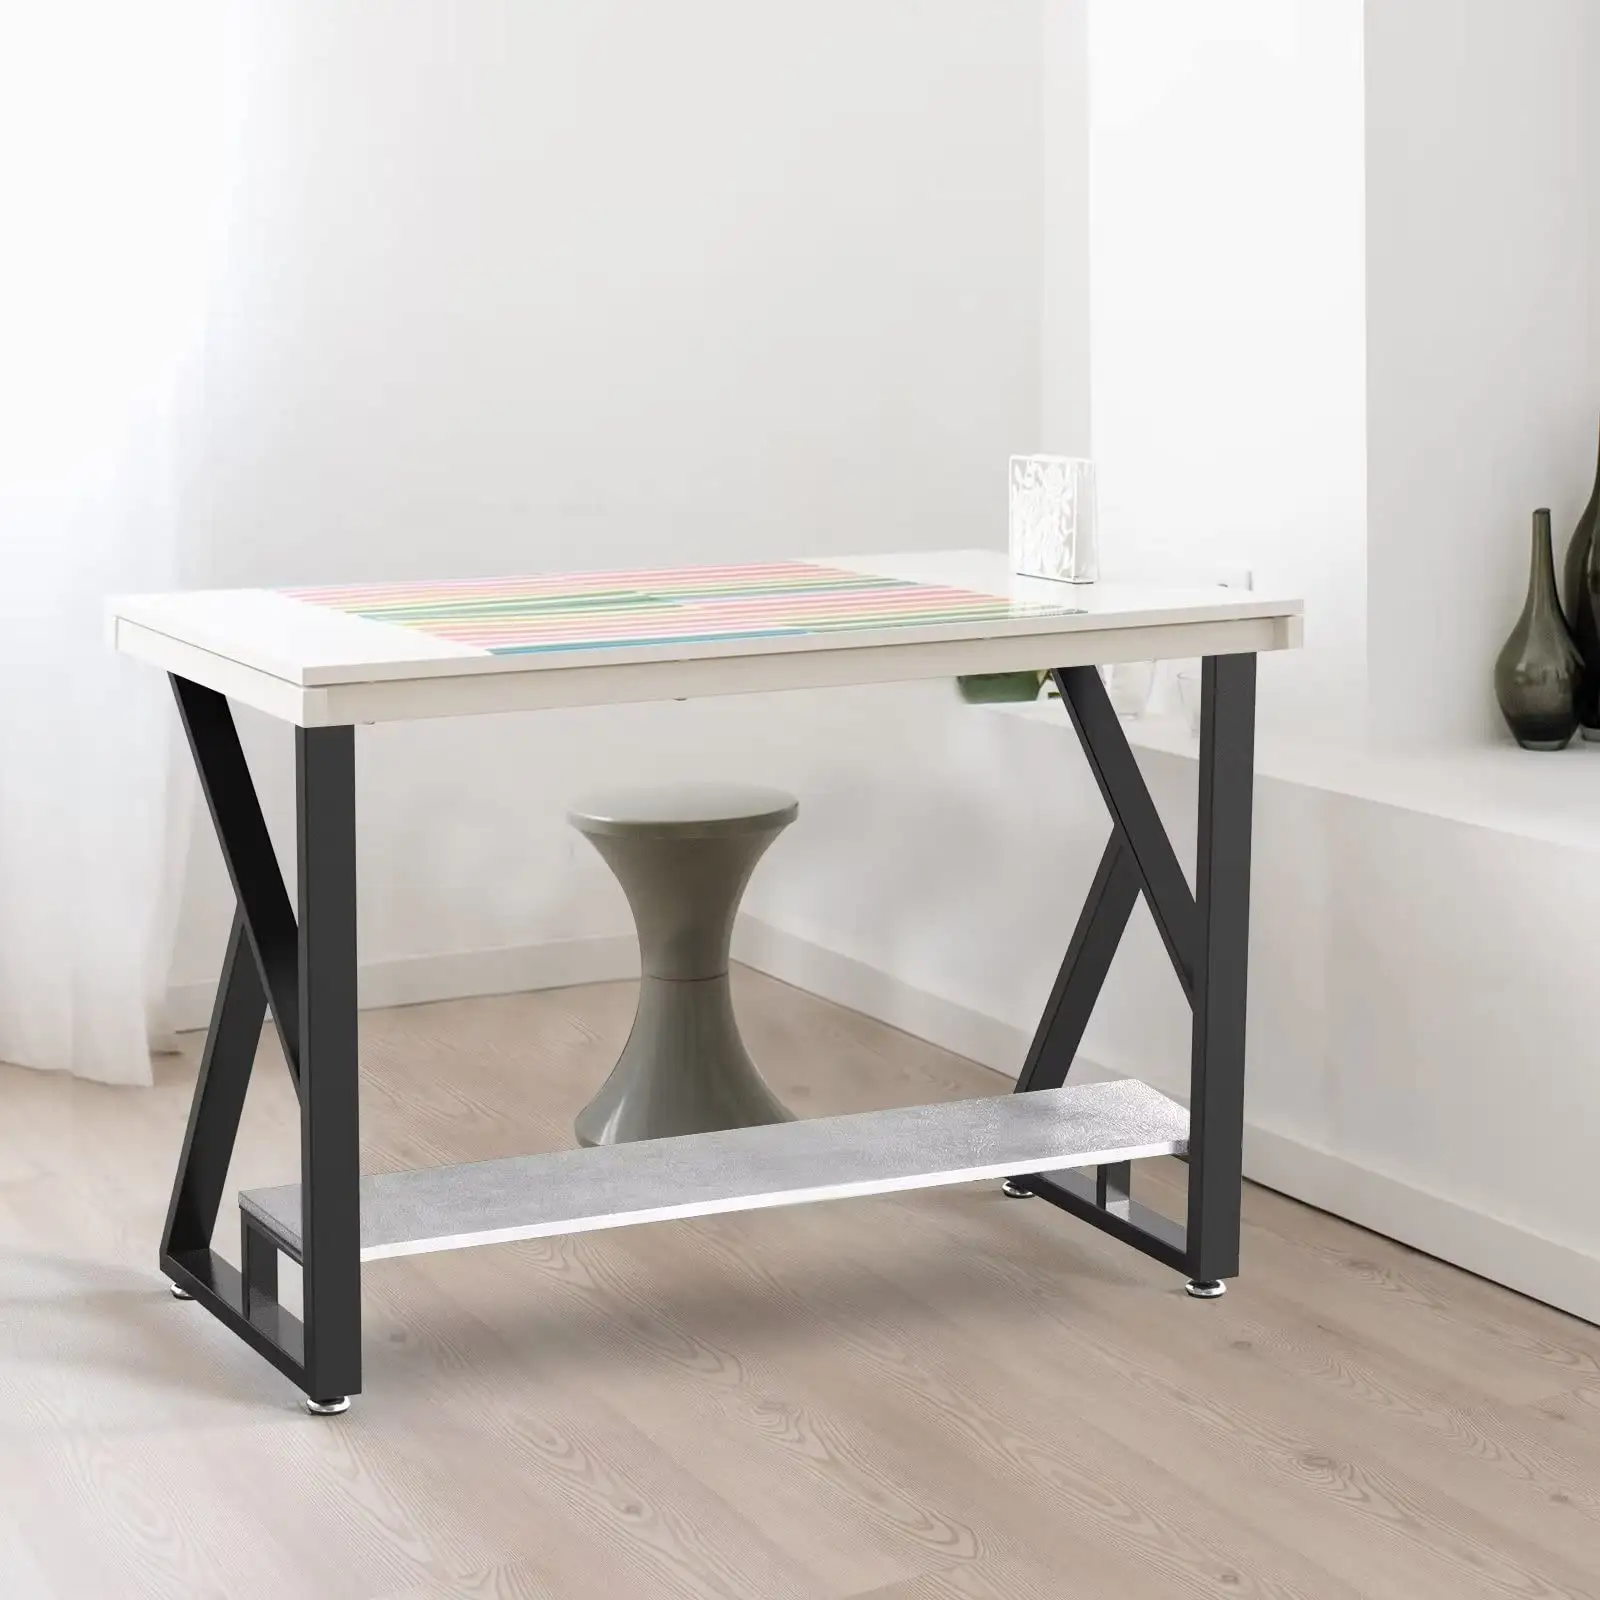 Pieds de Table en acier inoxydable de haute qualité, pieds de Table en fer noir, pieds de Table personnalisés en métal de Style nordique